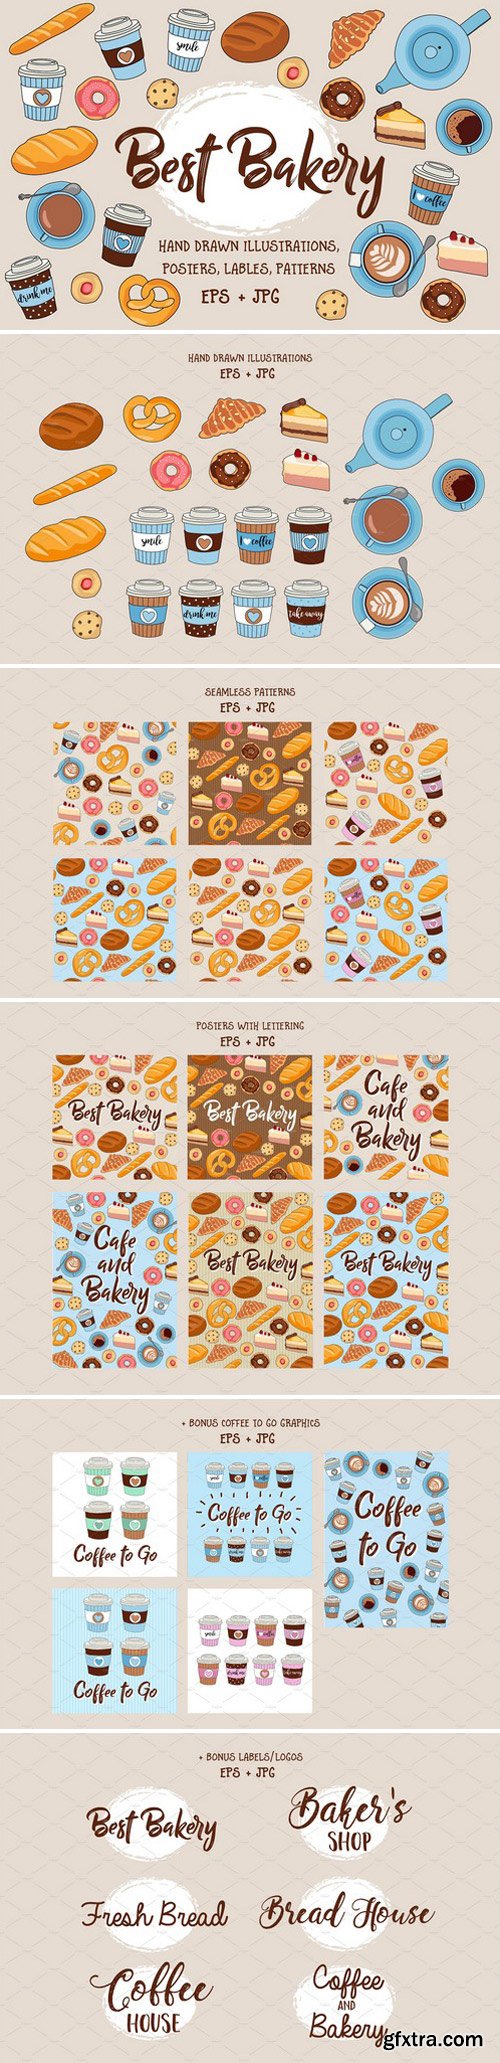 CM - Best Bakery illustration pack +bonus 2255646